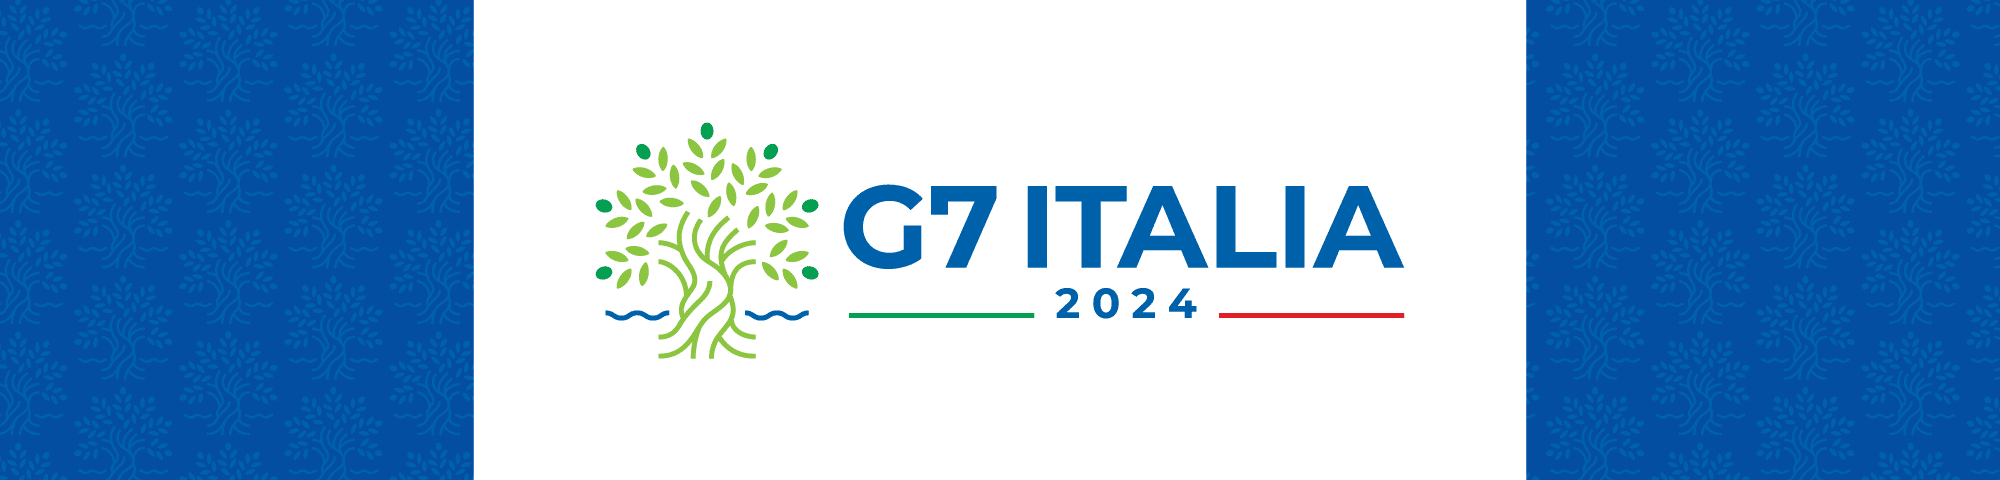 G7 Riunione Ministeriale Scienza e Tecnologia. Bologna Forlì 9-11 luglio 2024 